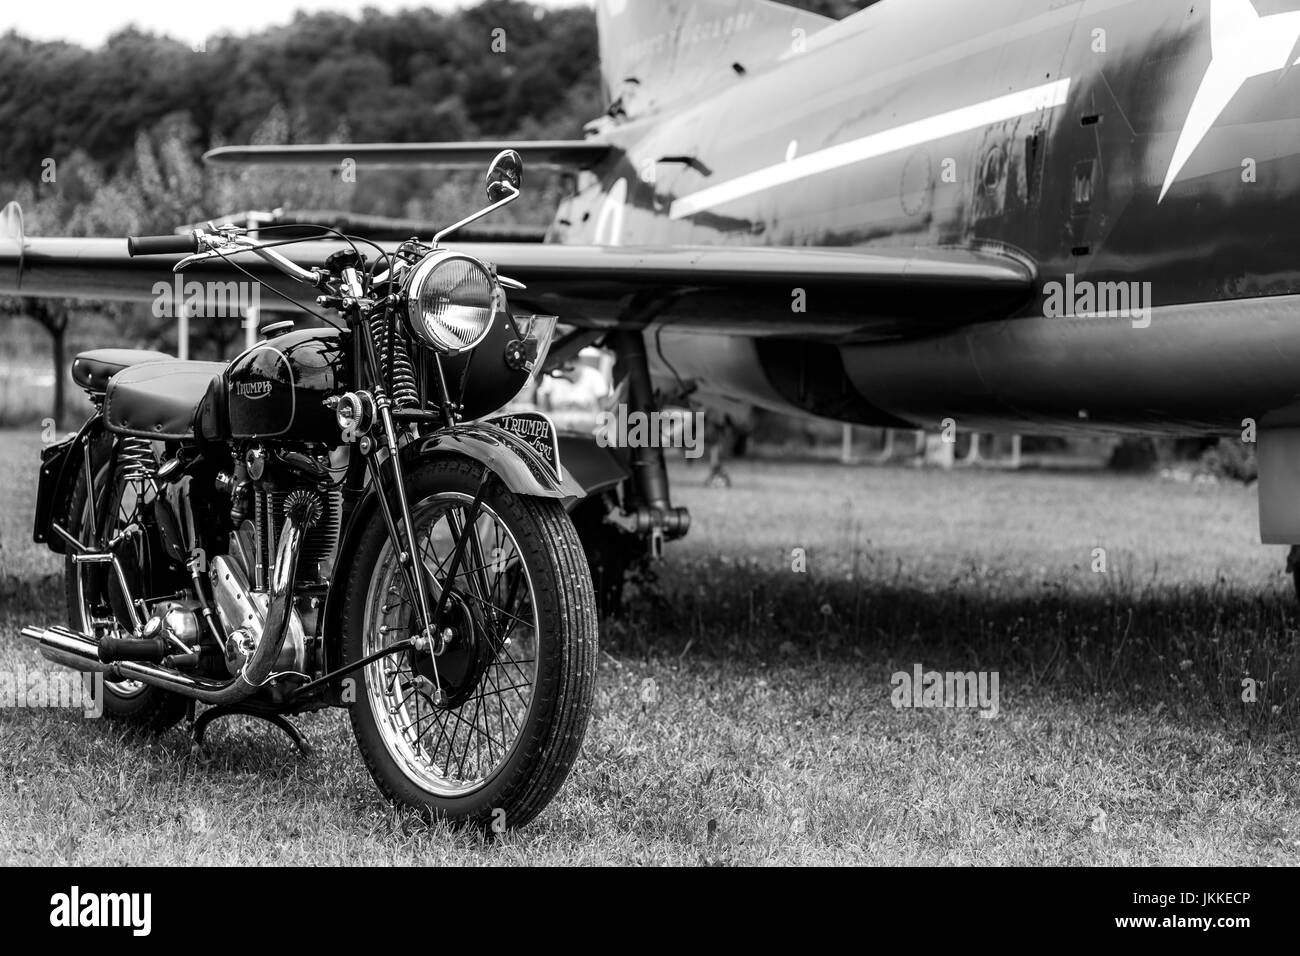 Vieille moto noir, faite par Triumph Motorcycles - marque britannique avec un avion dans l'arrière-plan. Noir et blanc. Banque D'Images